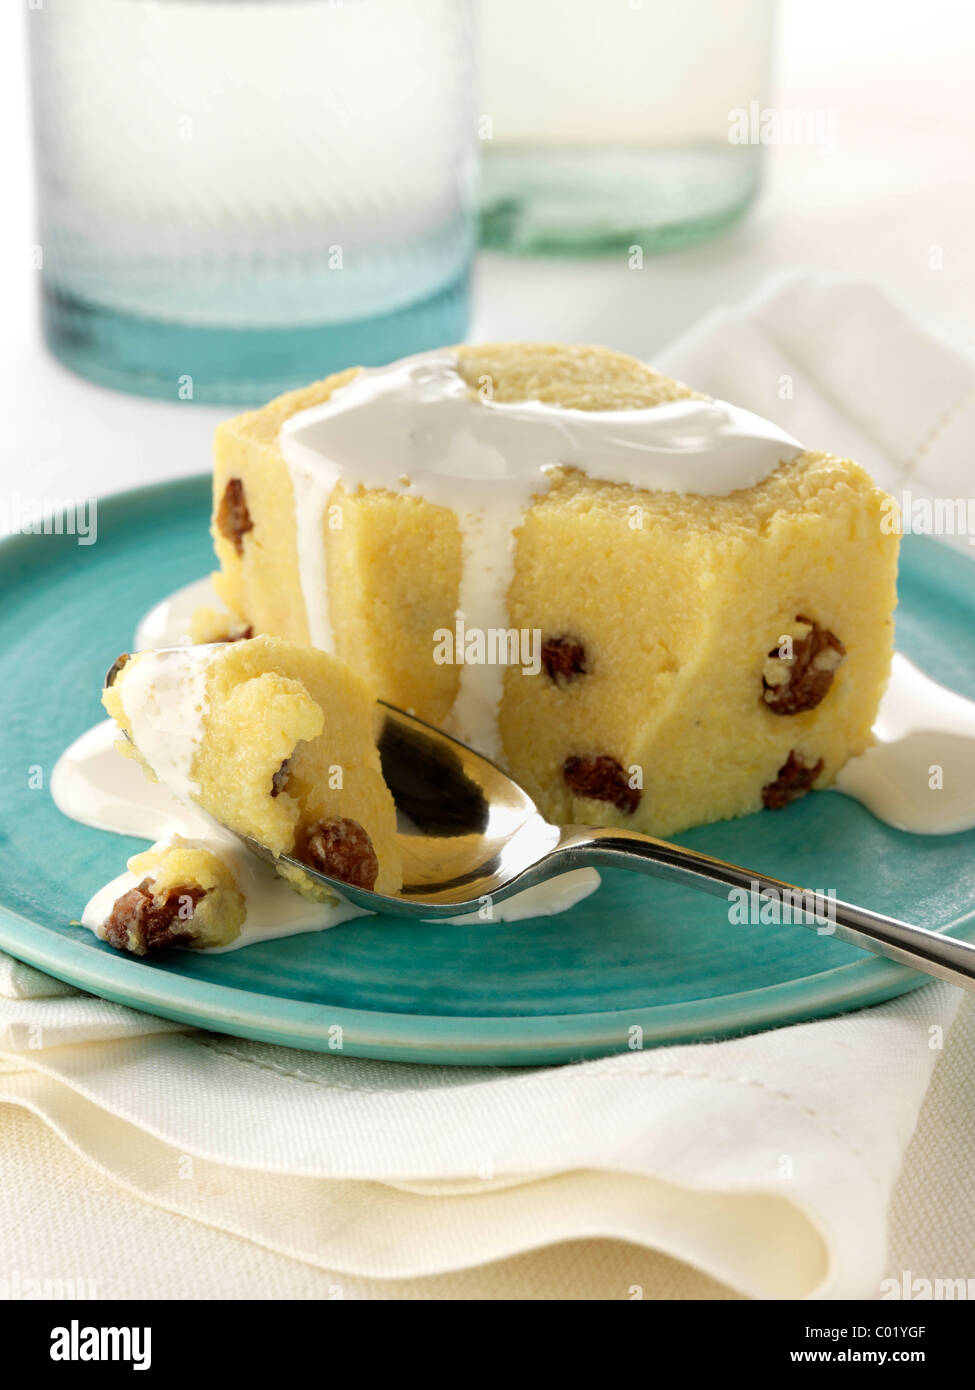 La polenta sucrée recette crème dessert soja vegan Banque D'Images